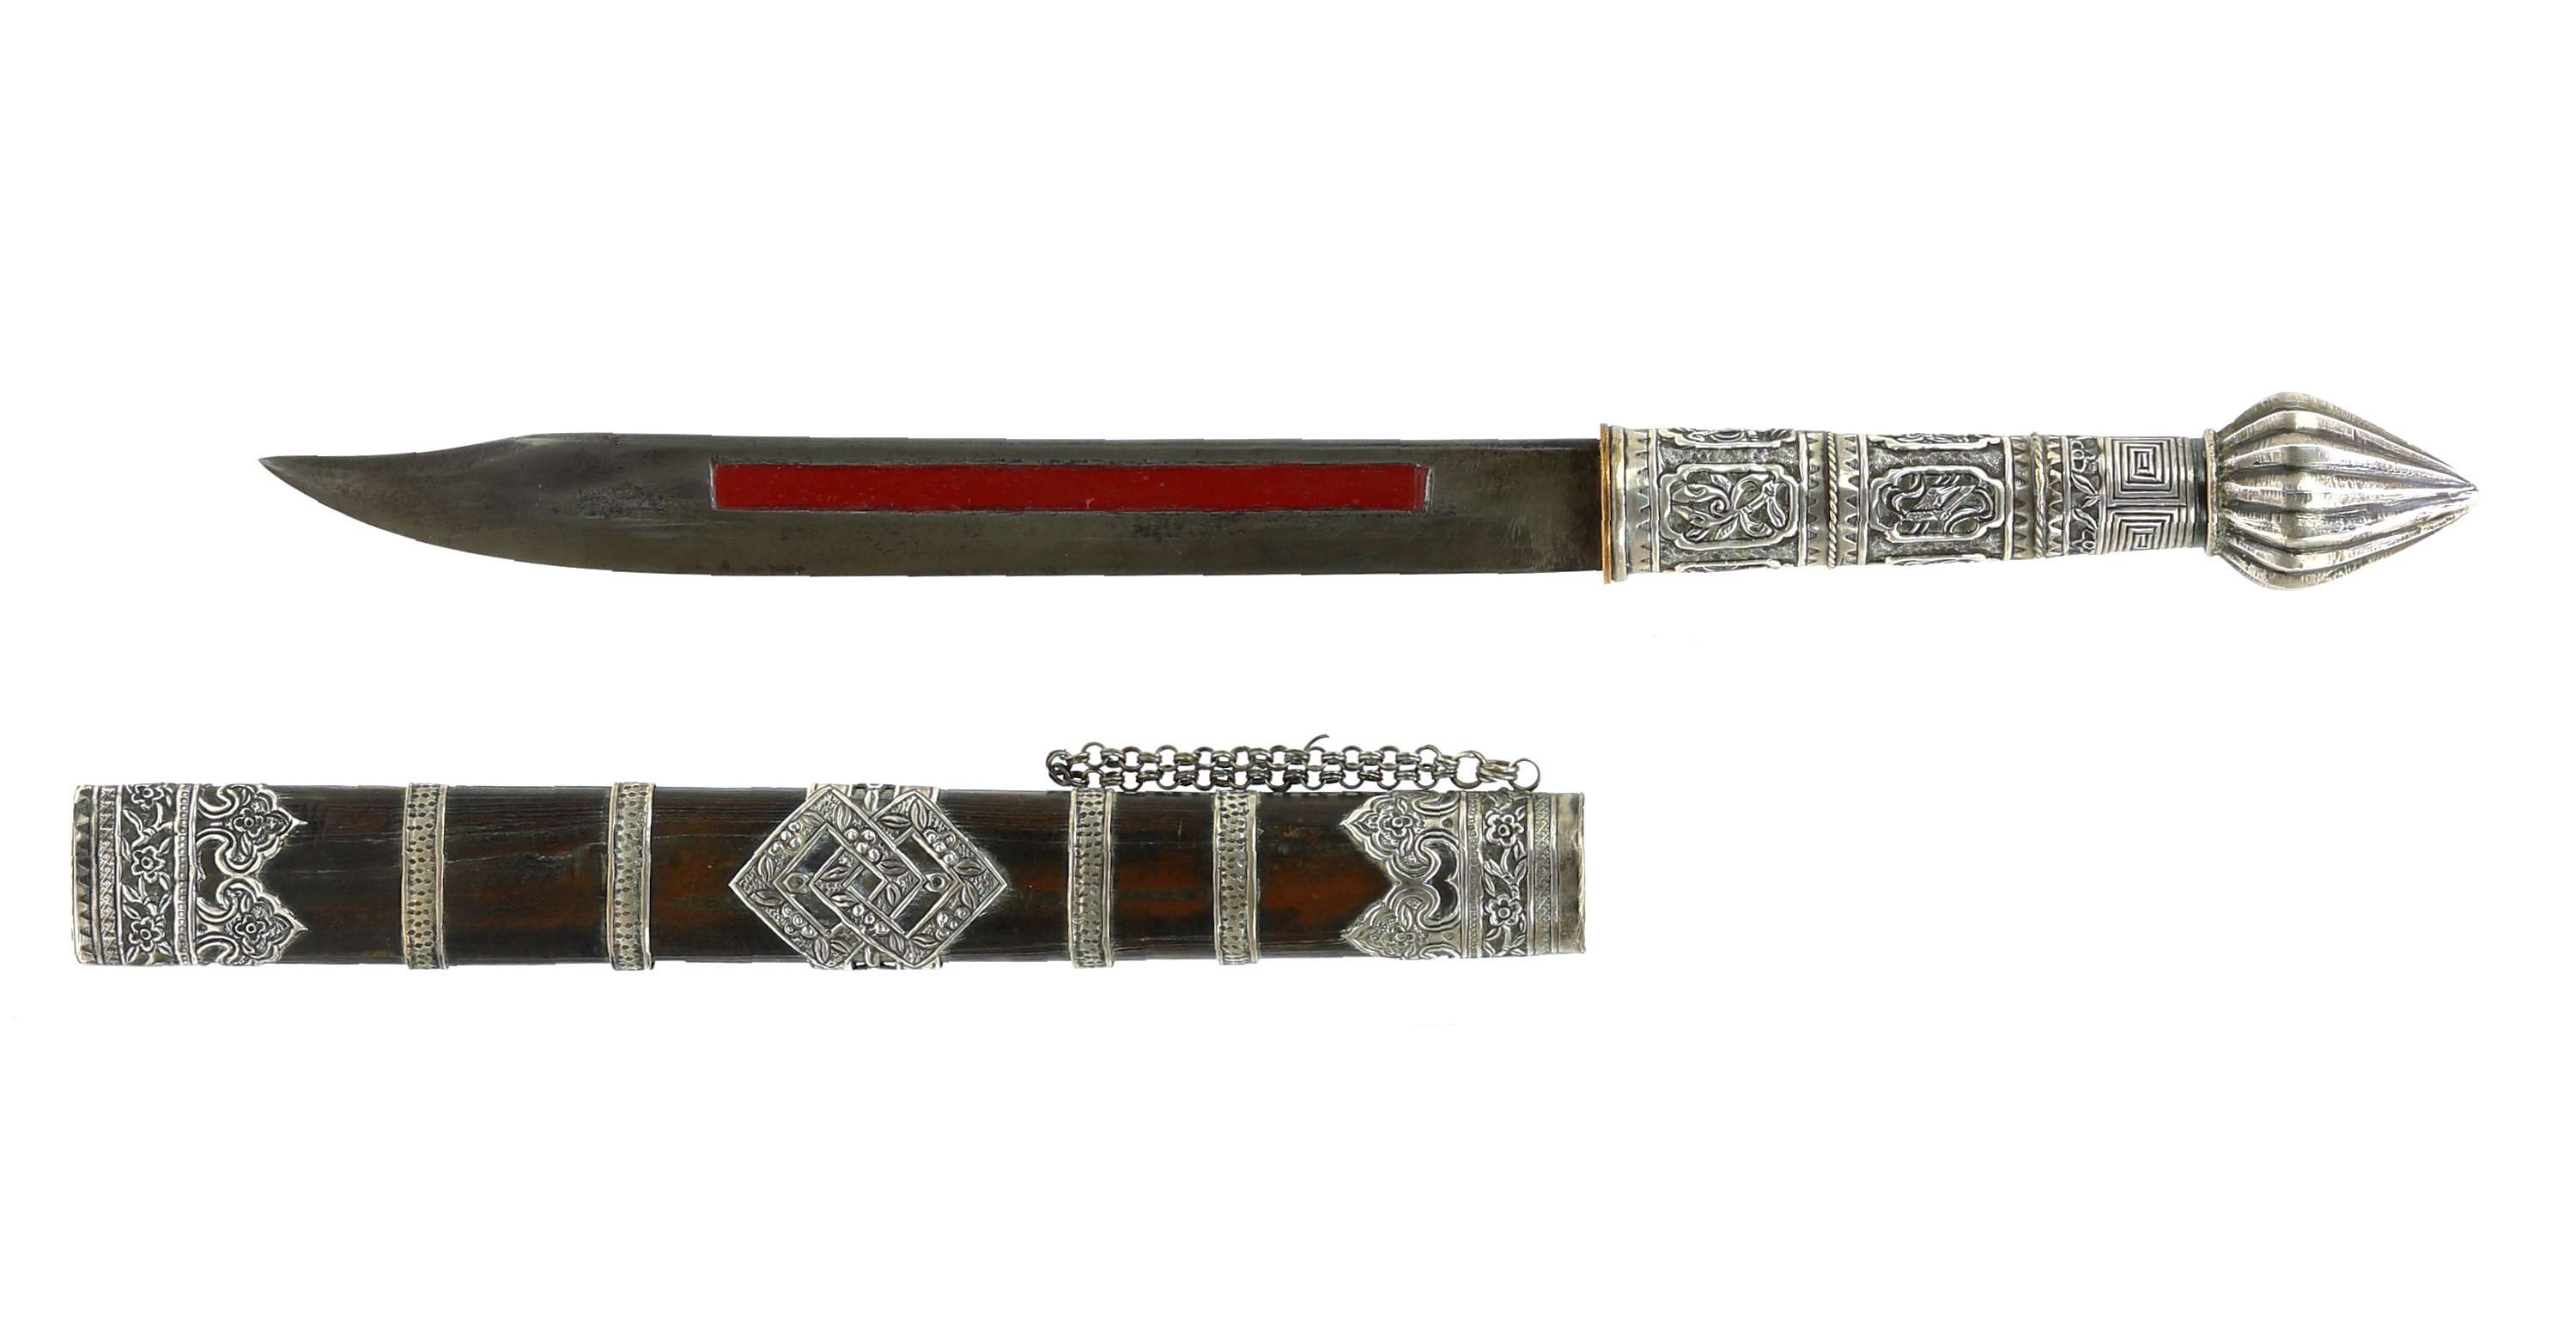 Yunnan Dai minority knife